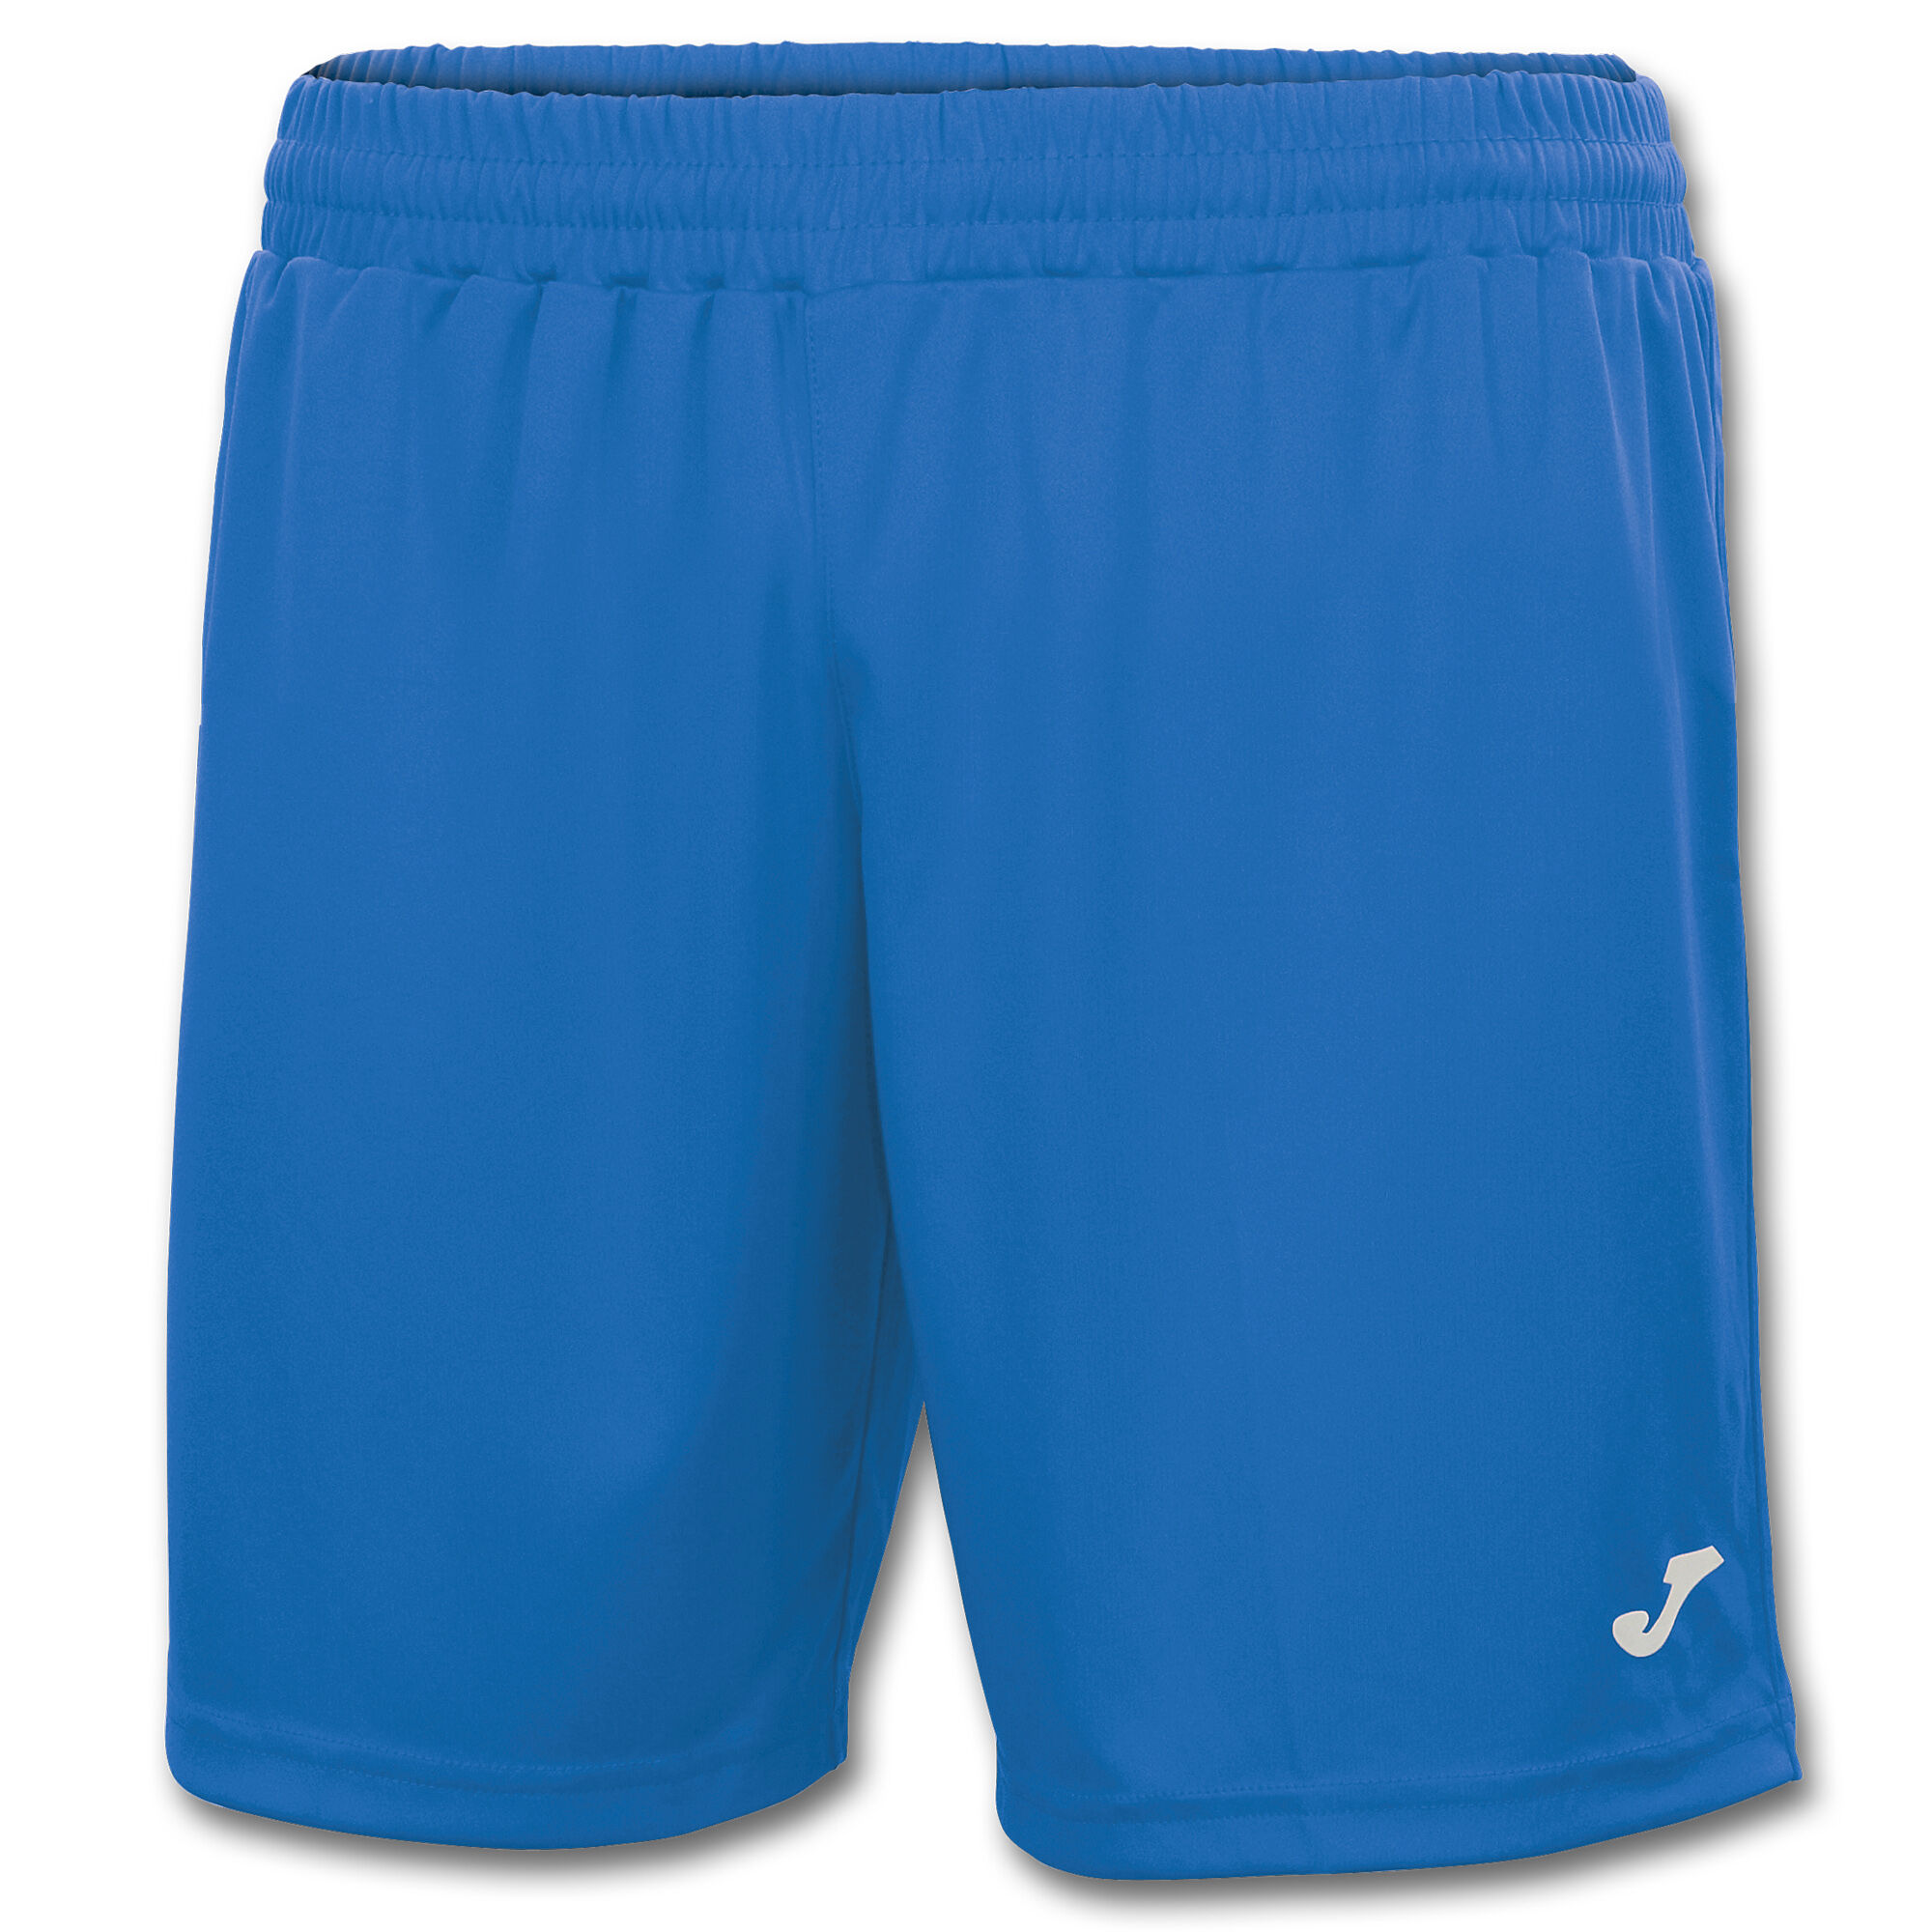 Shorts man Treviso royal blue